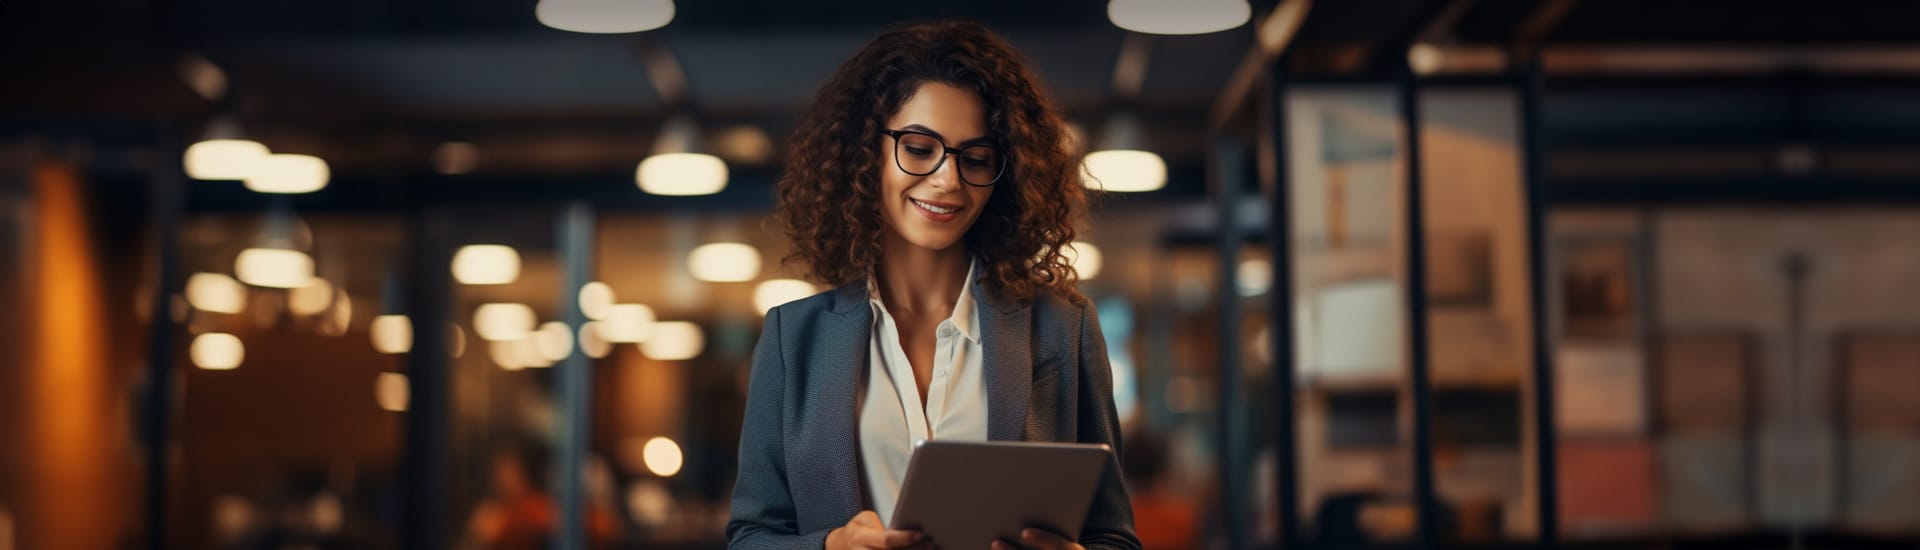 Eine junge Frau im Customer Support mit braunen Locken trägt eine Brille und einen professionellen Anzug während sie im Büro steht und auf ein iPad oder Touchpad runterlächelt